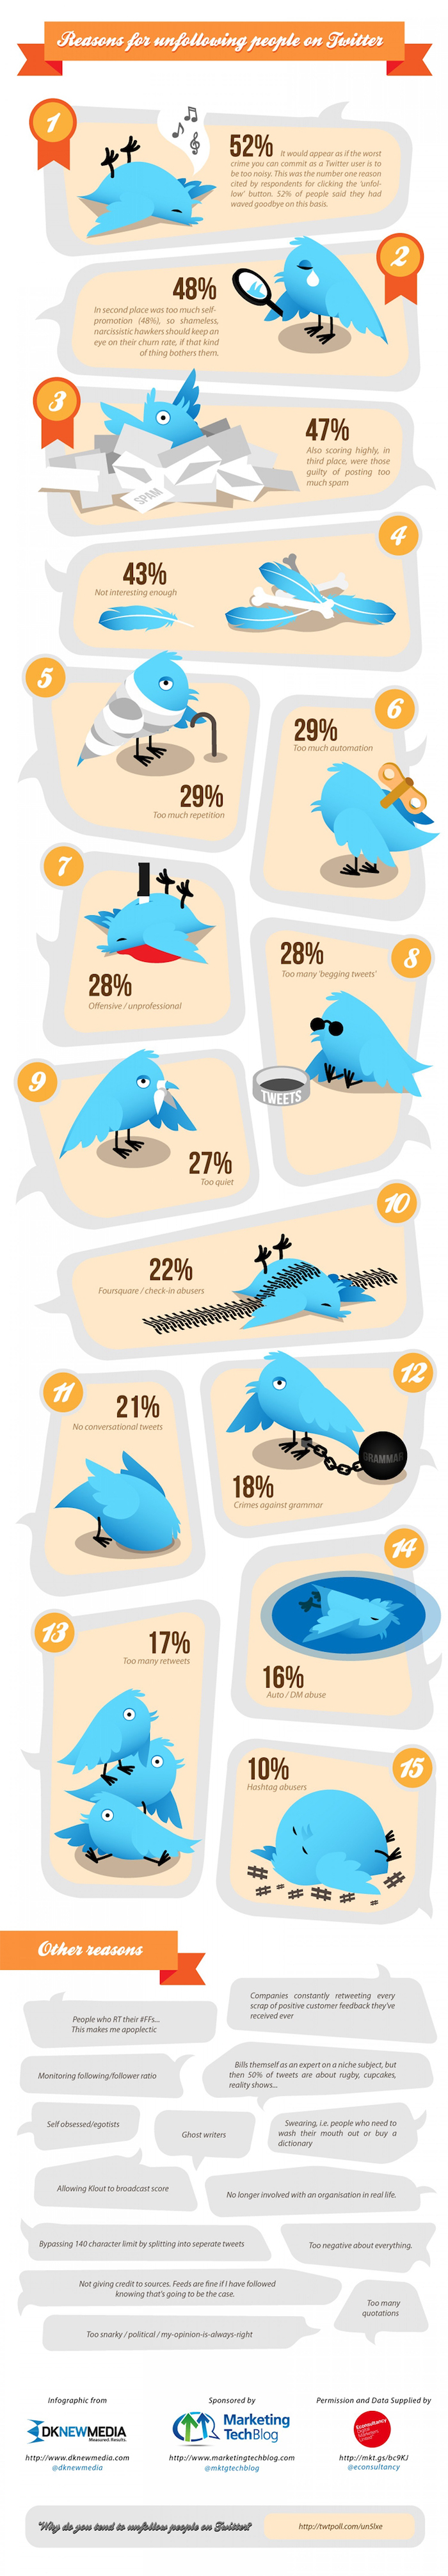 infographie sur les causes de désabonnement sur Twitter